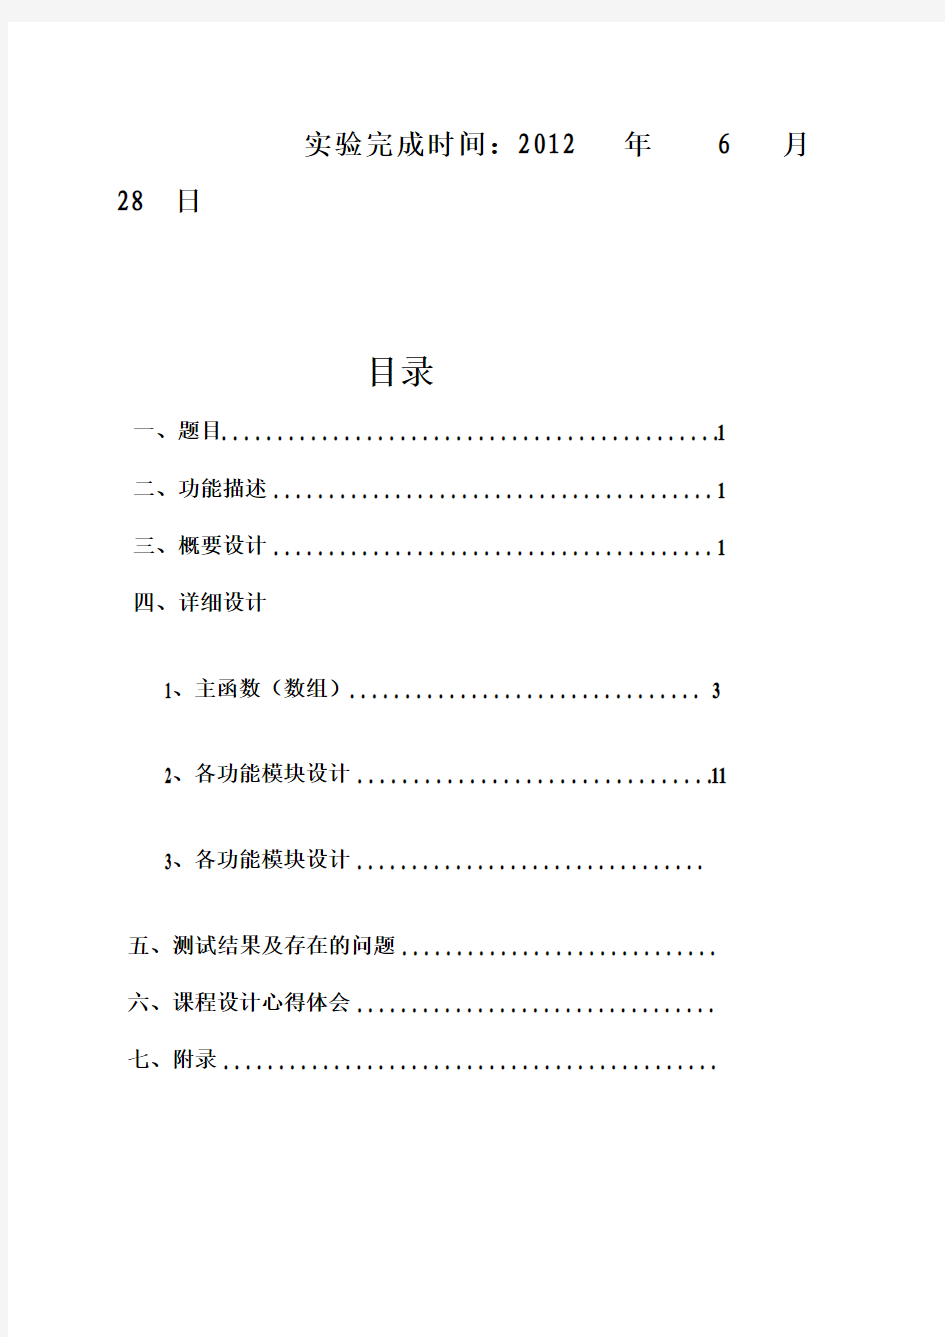 重庆交通大学毕业课程设计报告